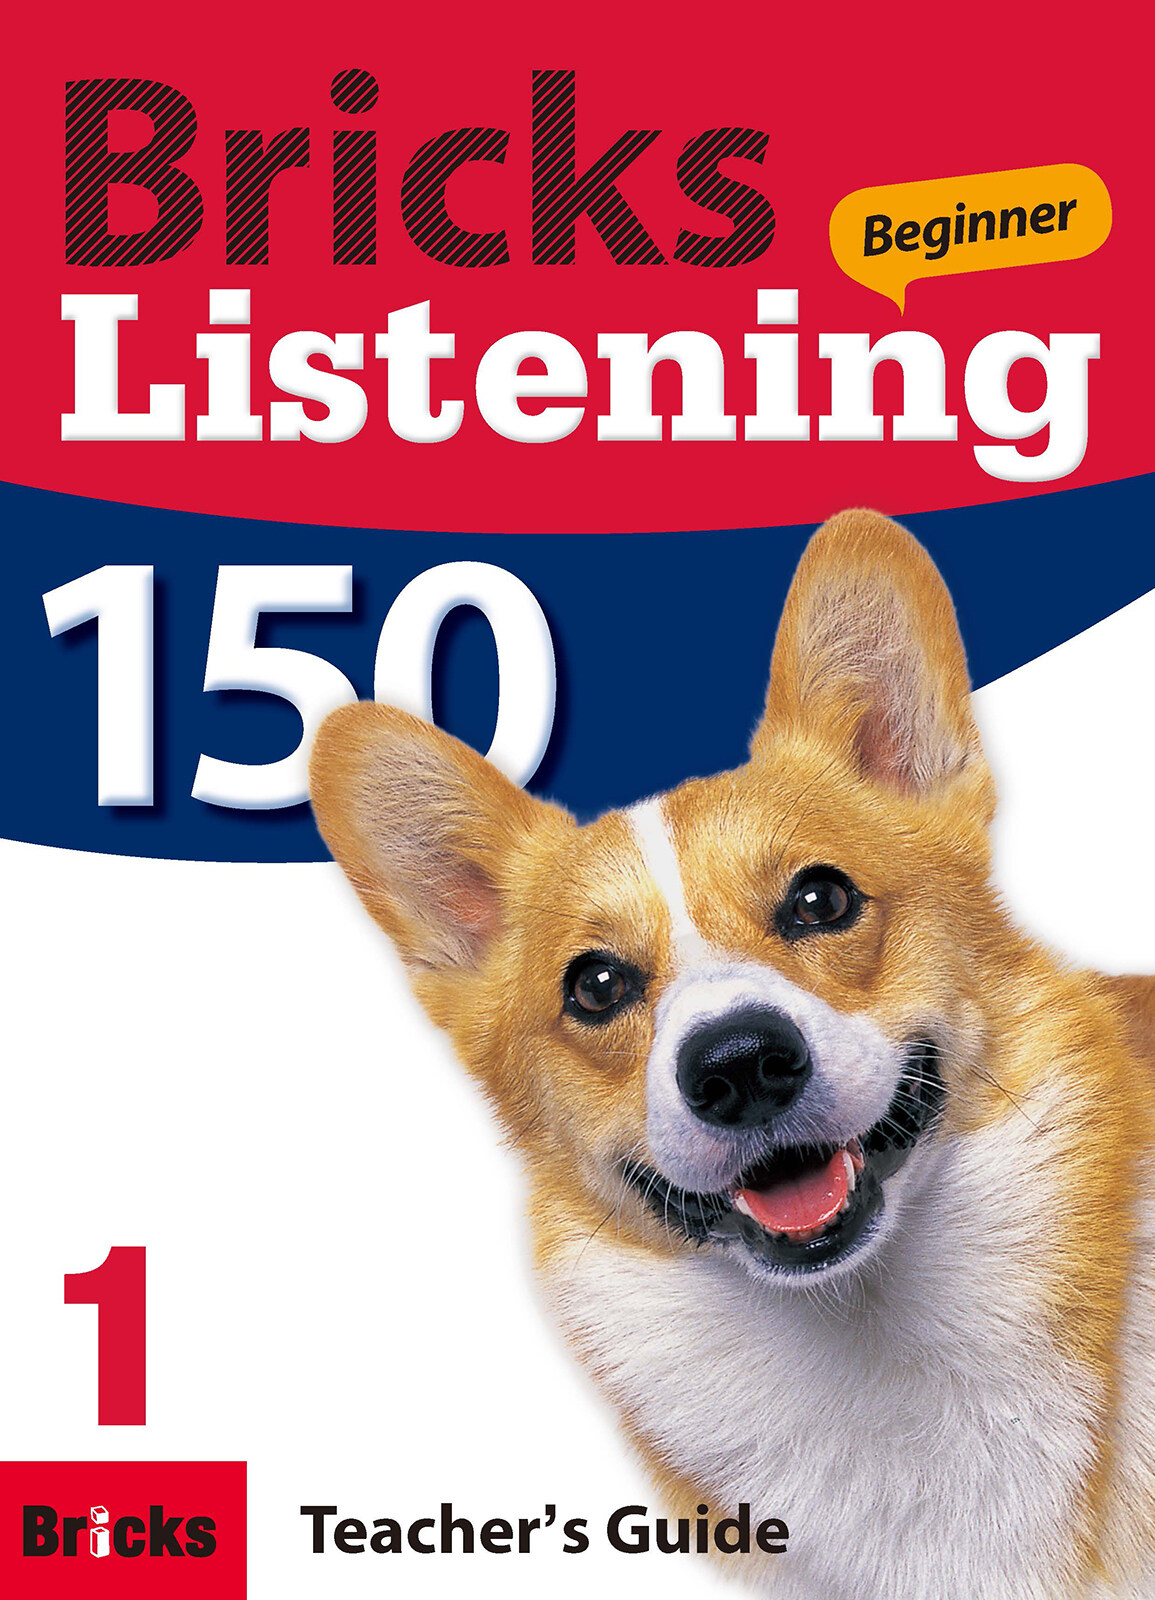 Bricks Listening Beginner 150 Level 1 : Teachers Guide